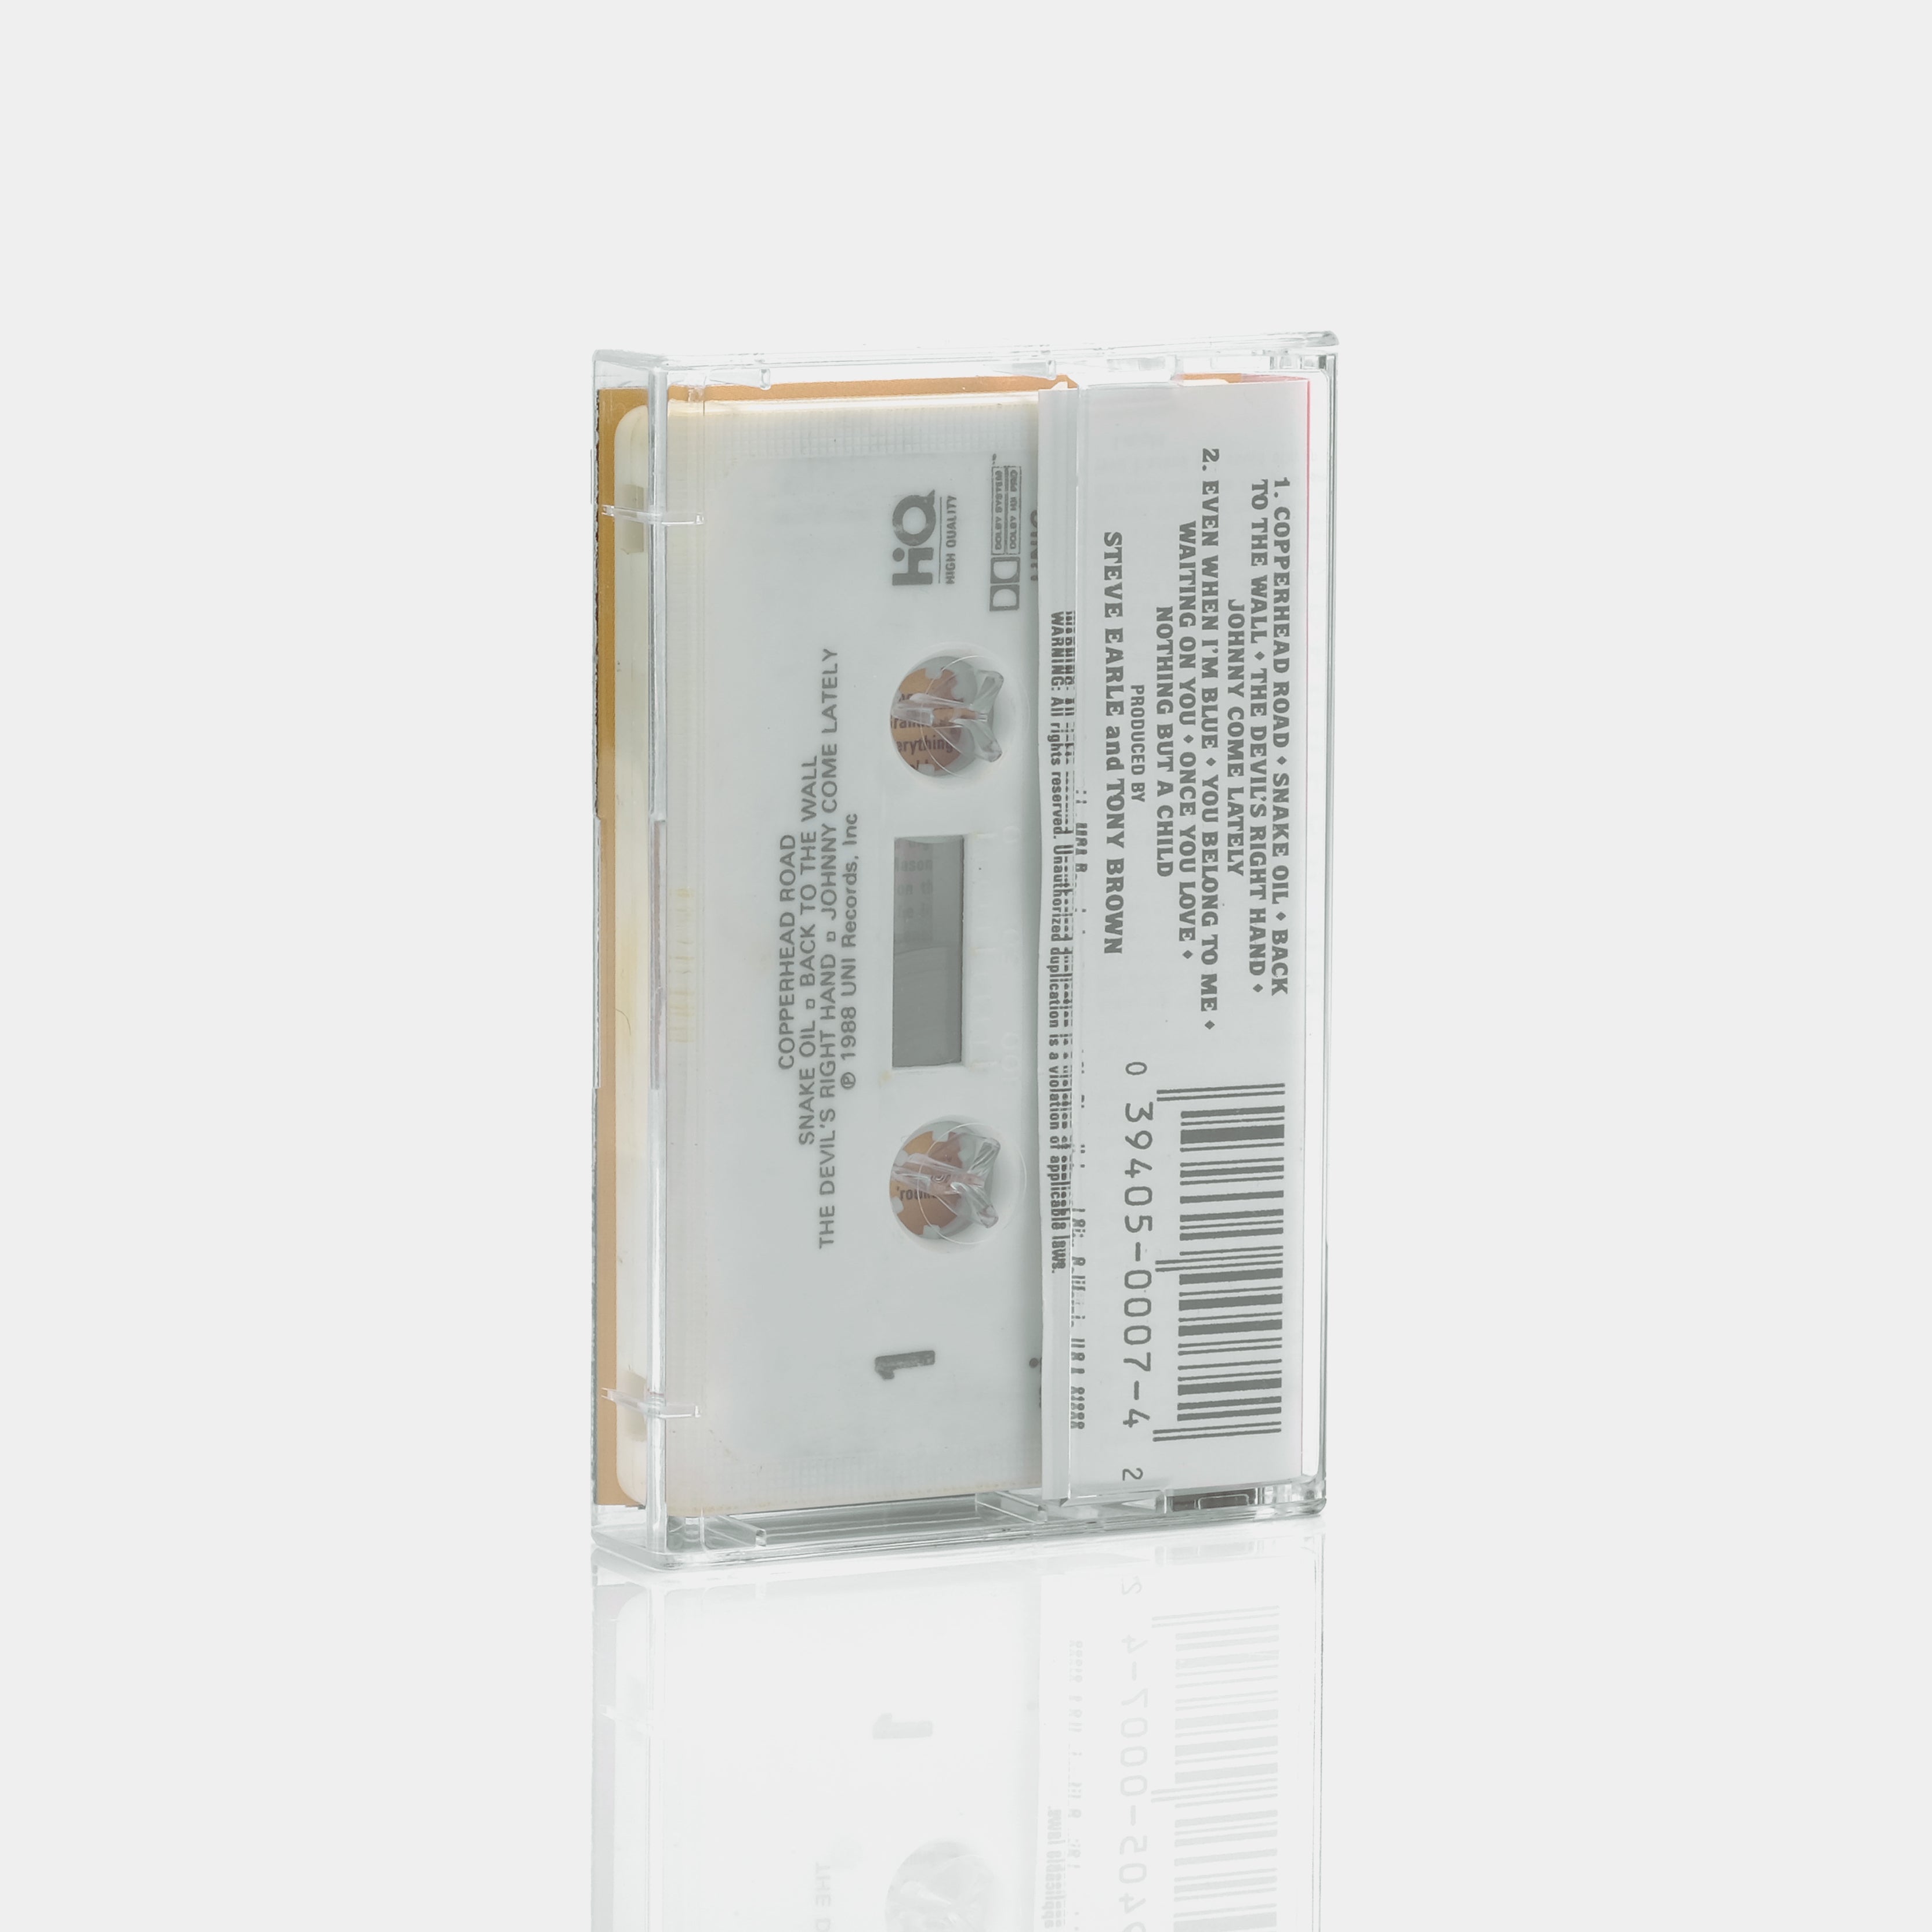 Steve Earle - Copperhead Road Cassette Tape